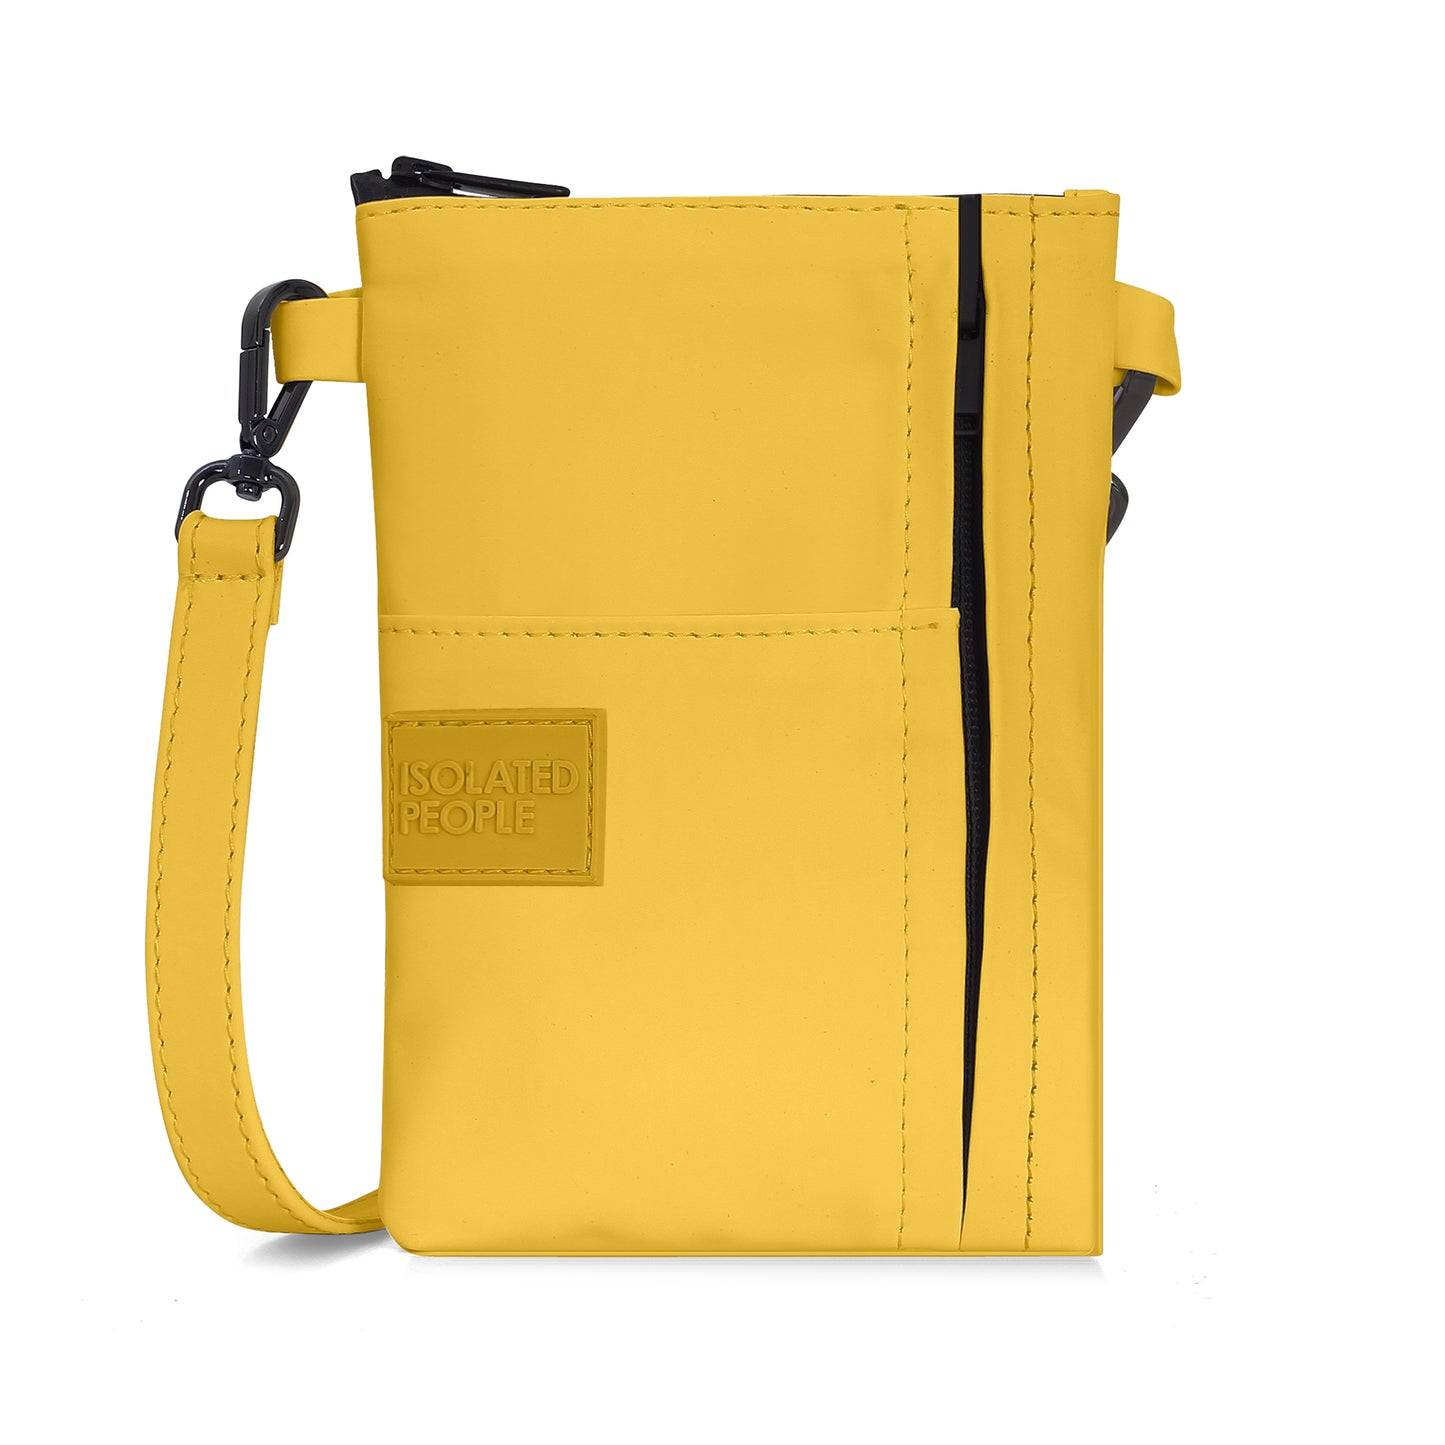 Isolated People Yellow Mini Crossbody Bag